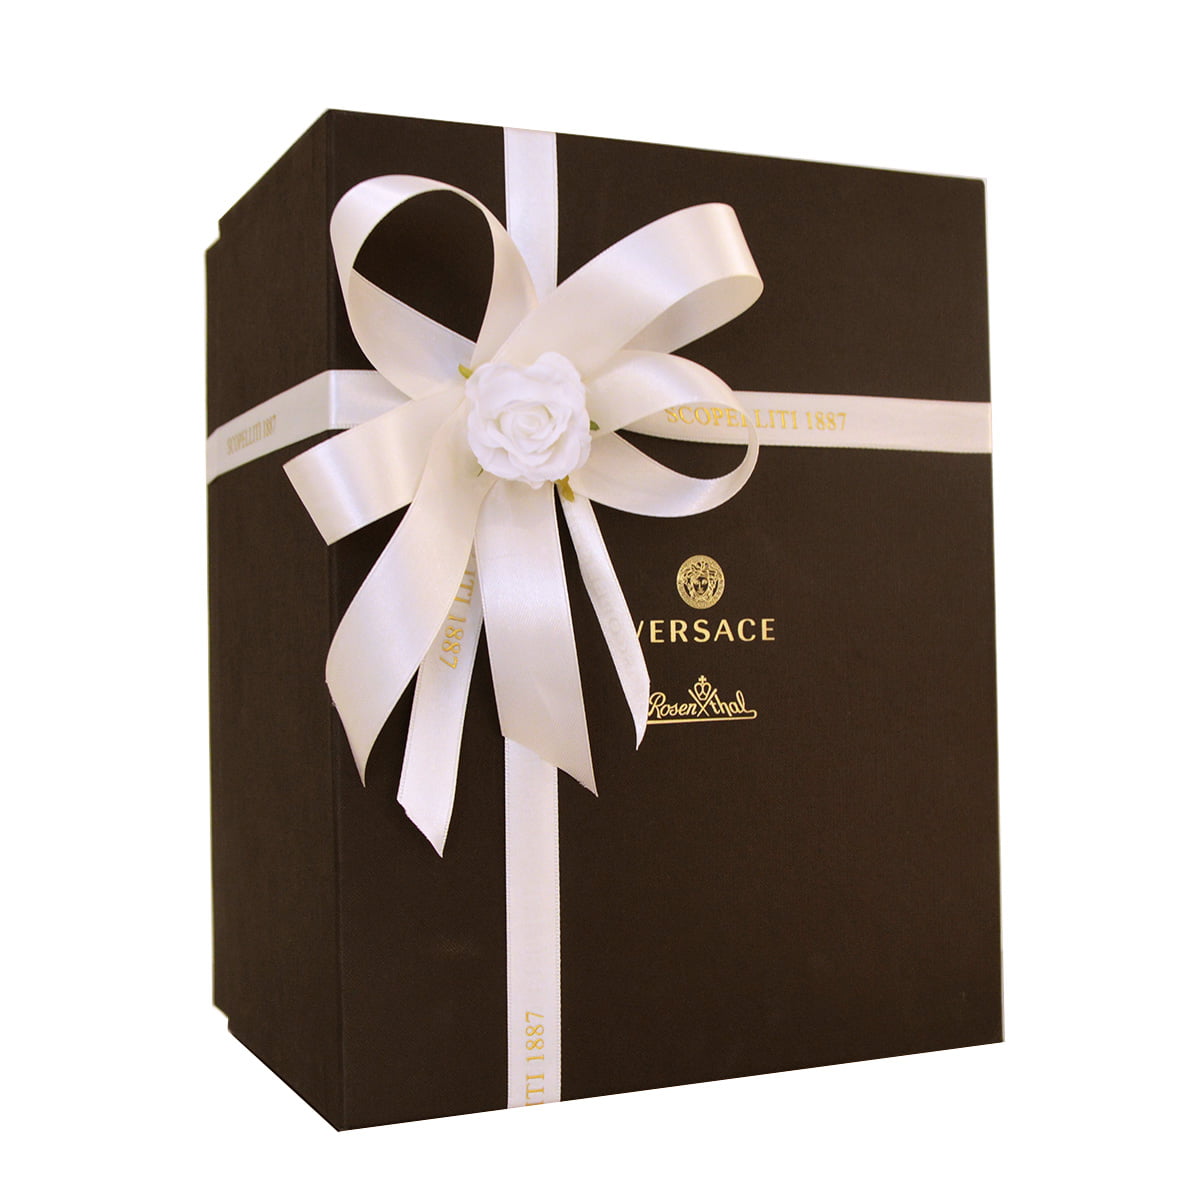 versace gift box